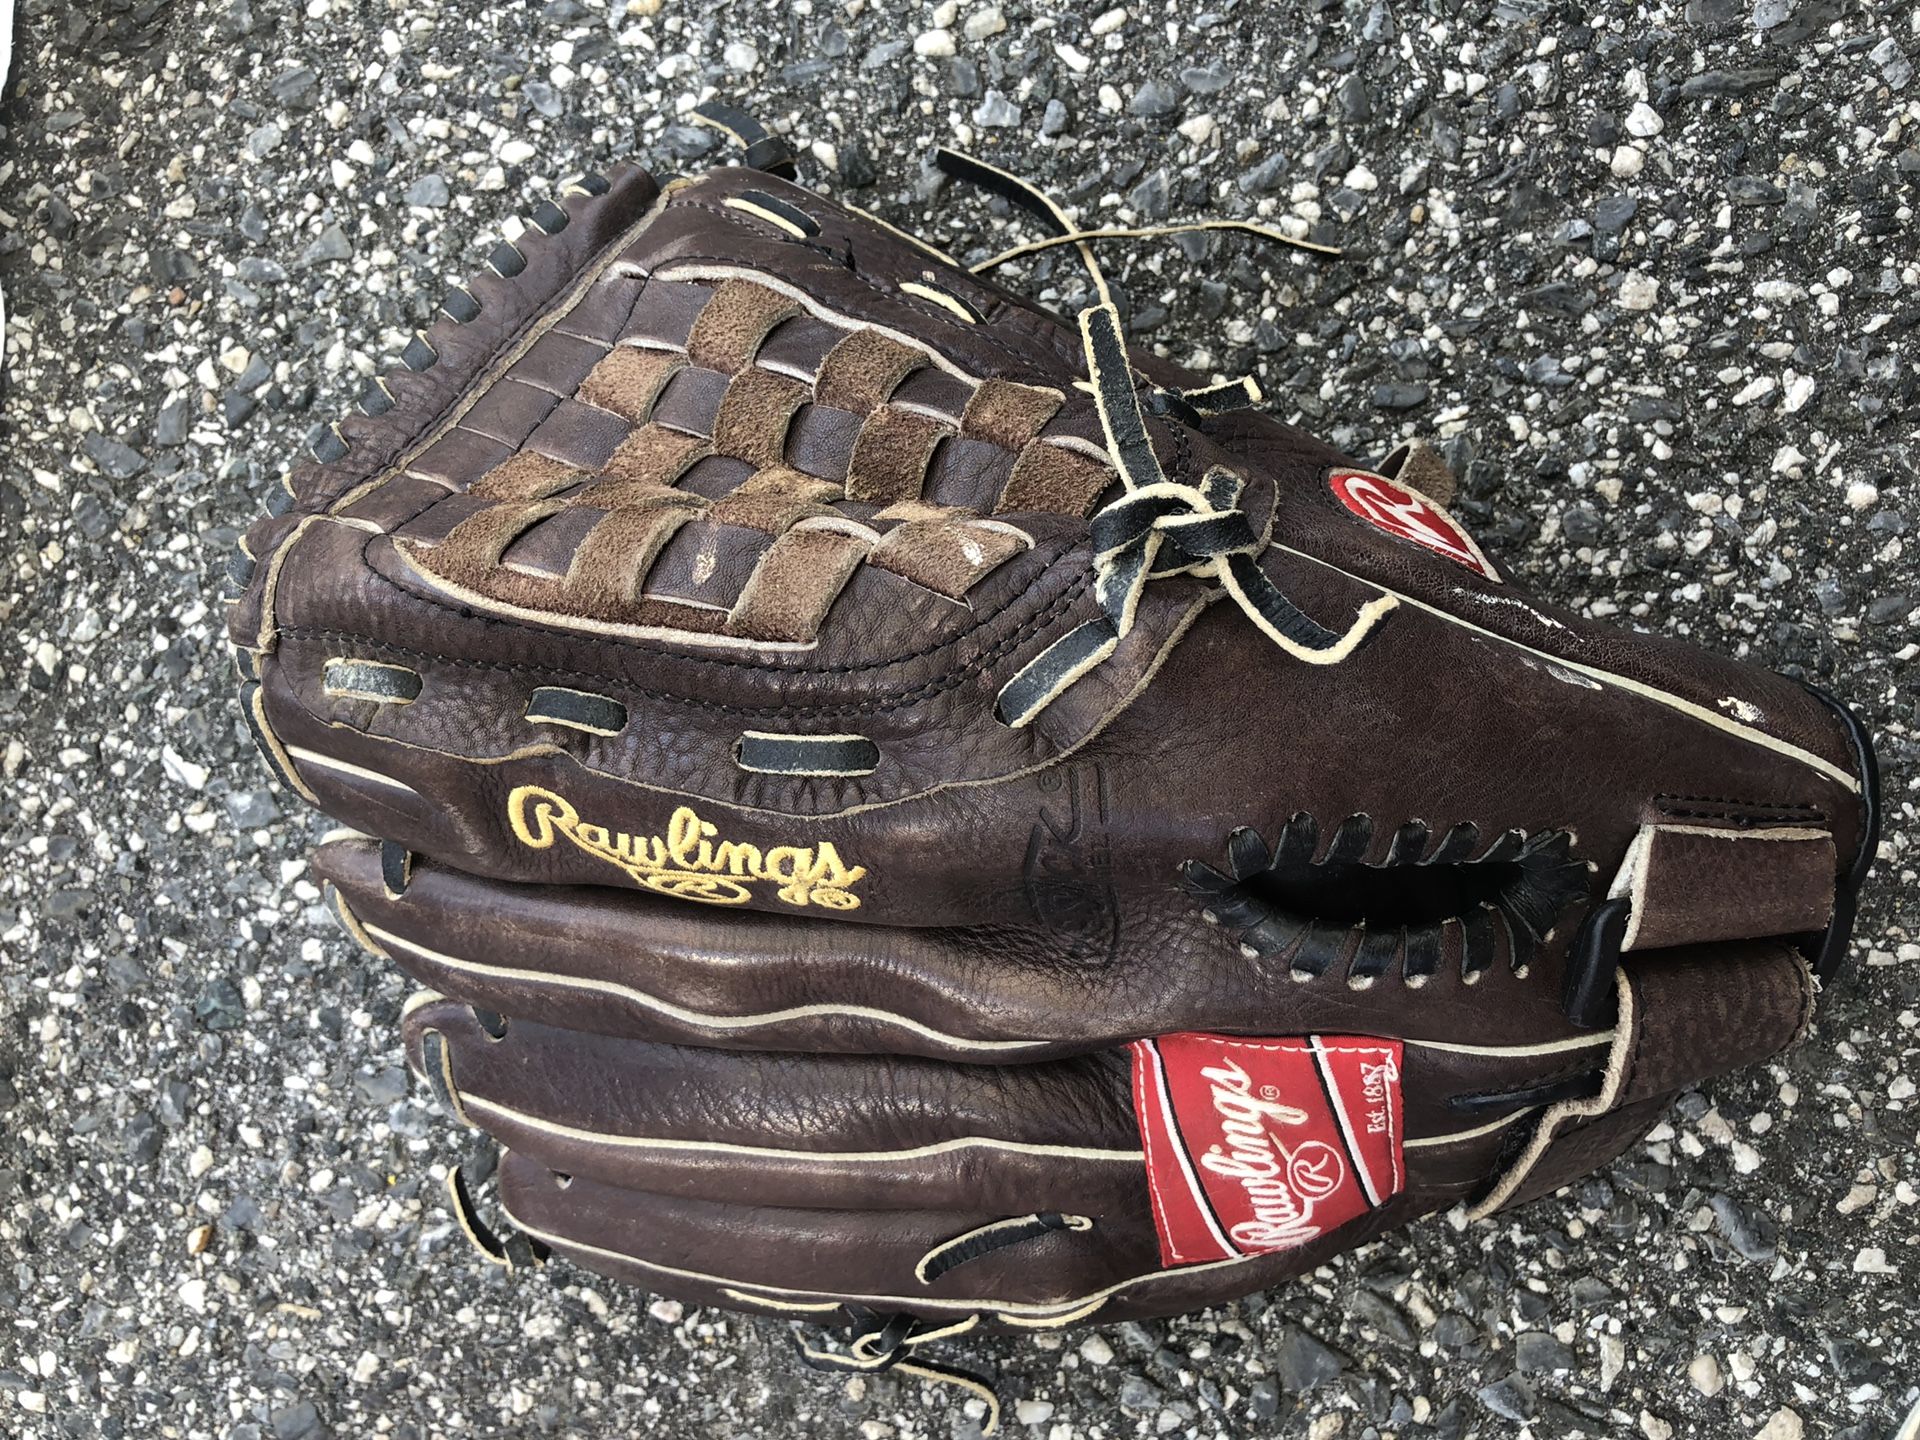 Rawlings Glove 13 Inch (Baseball)